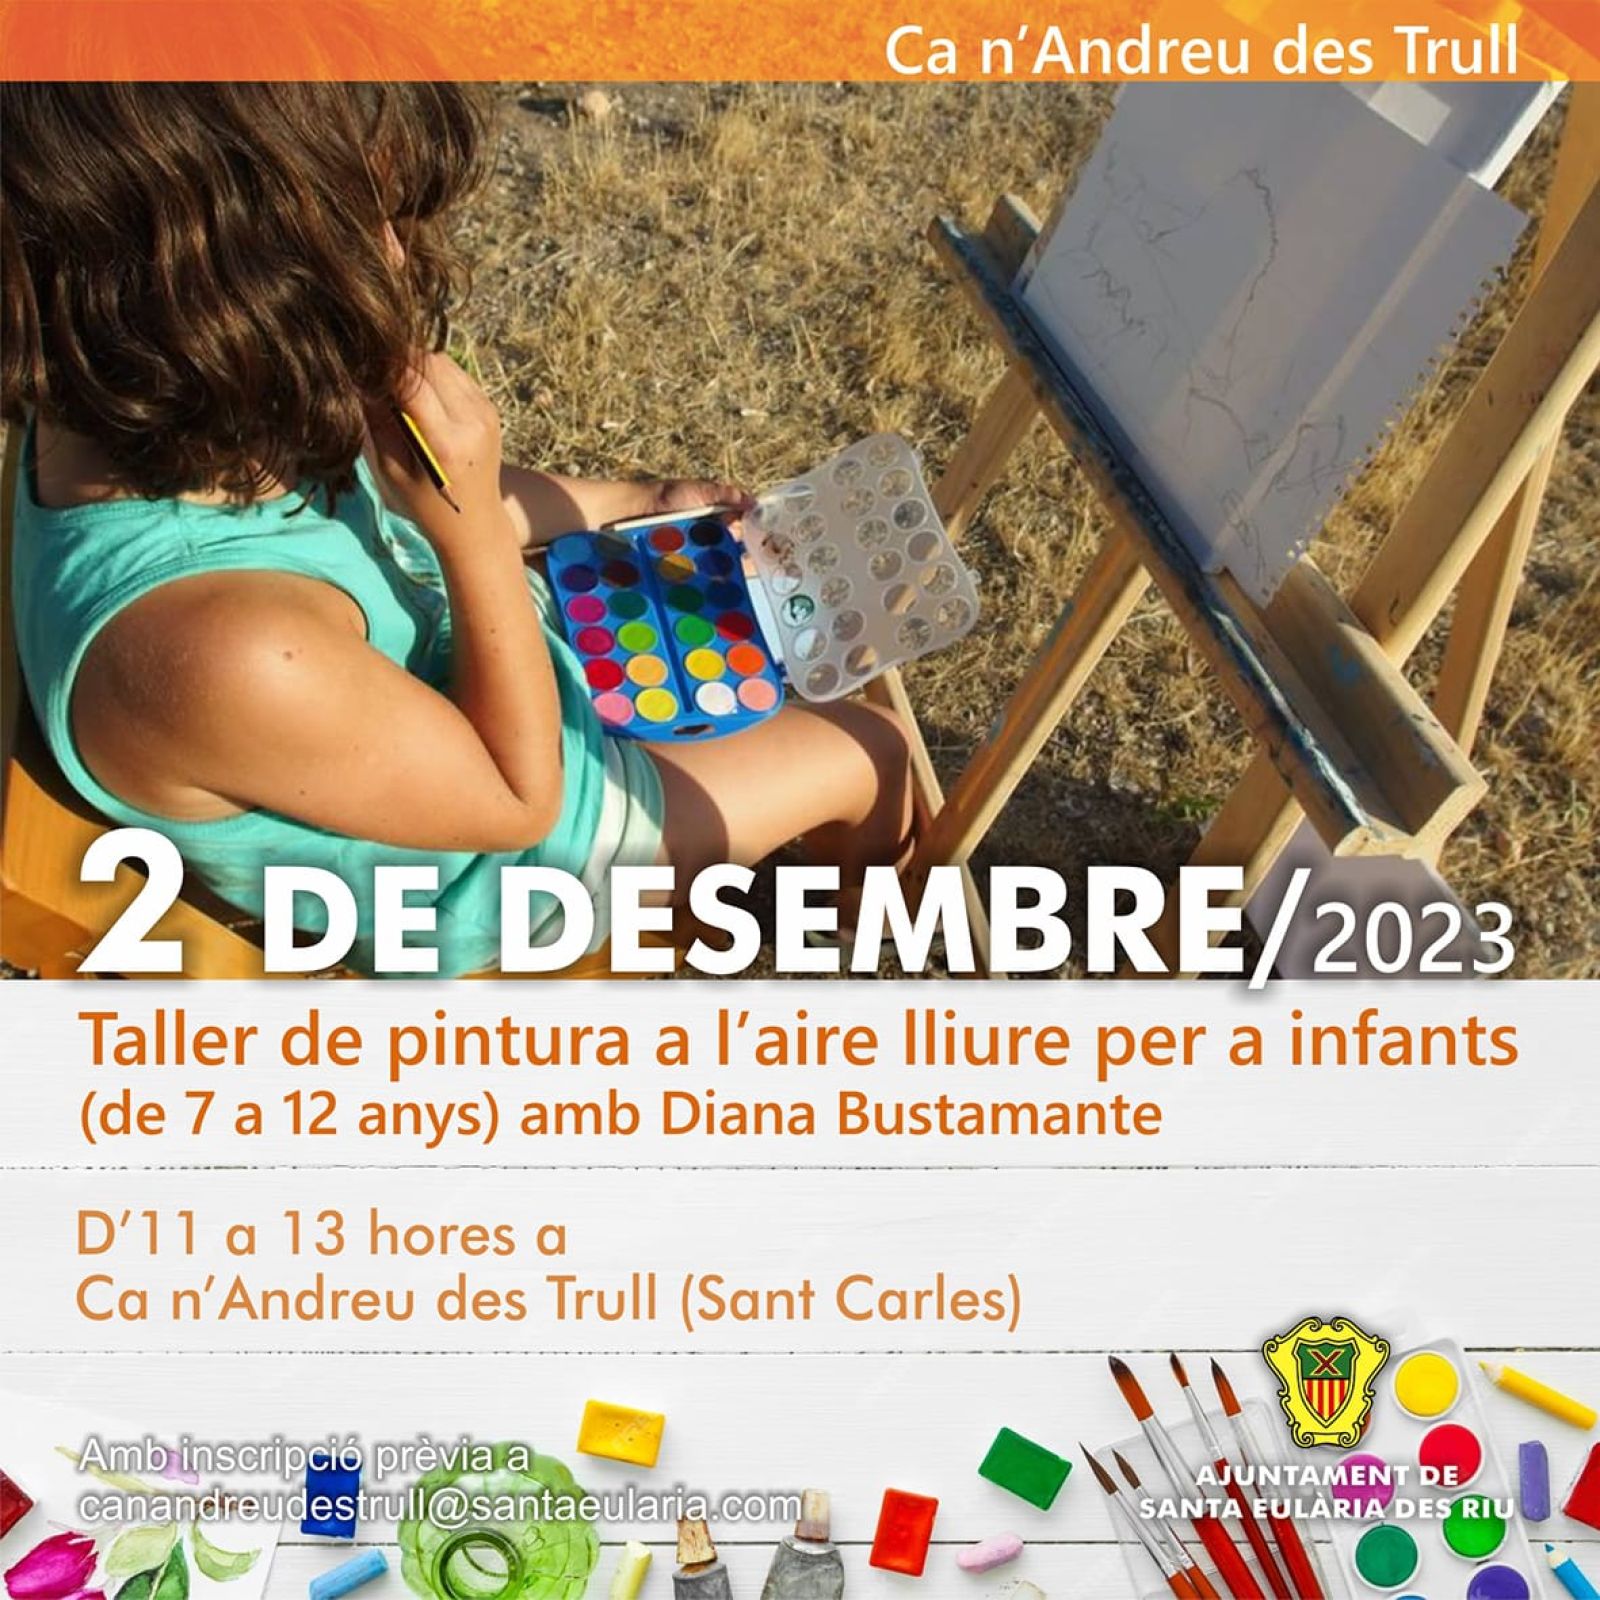 Taller de pintura per a infants a Ca n'Andreu des Trull el 2 de desembre